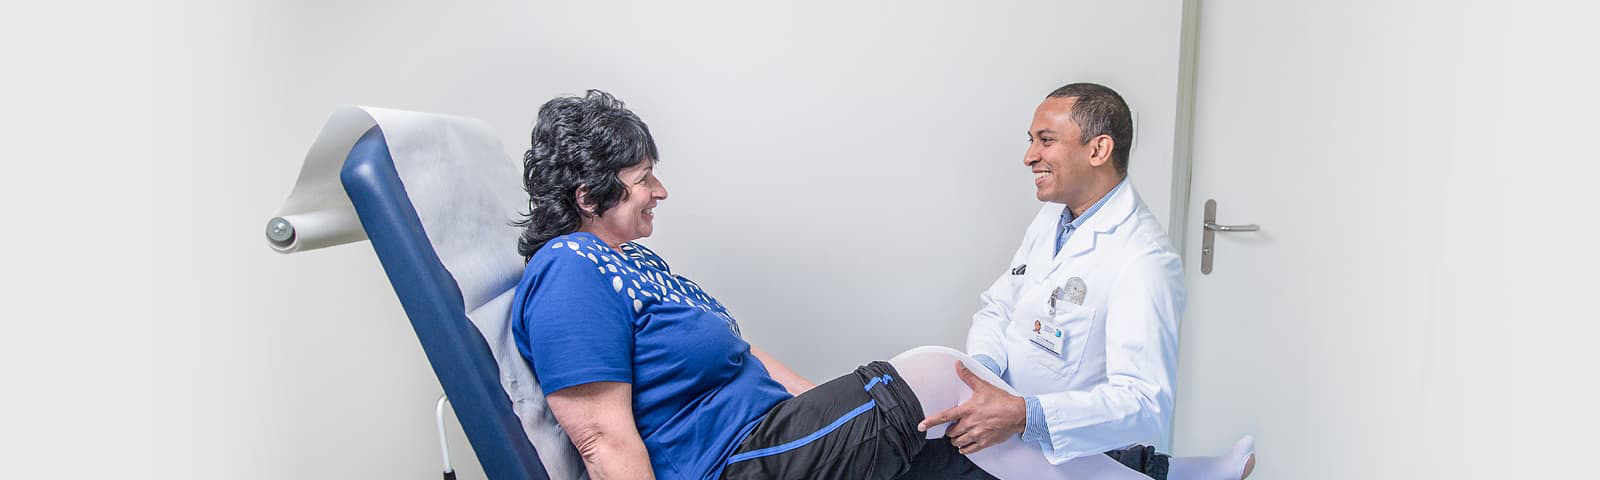 Dr med. Daniel de Menezes dans une conversation avec une patiente